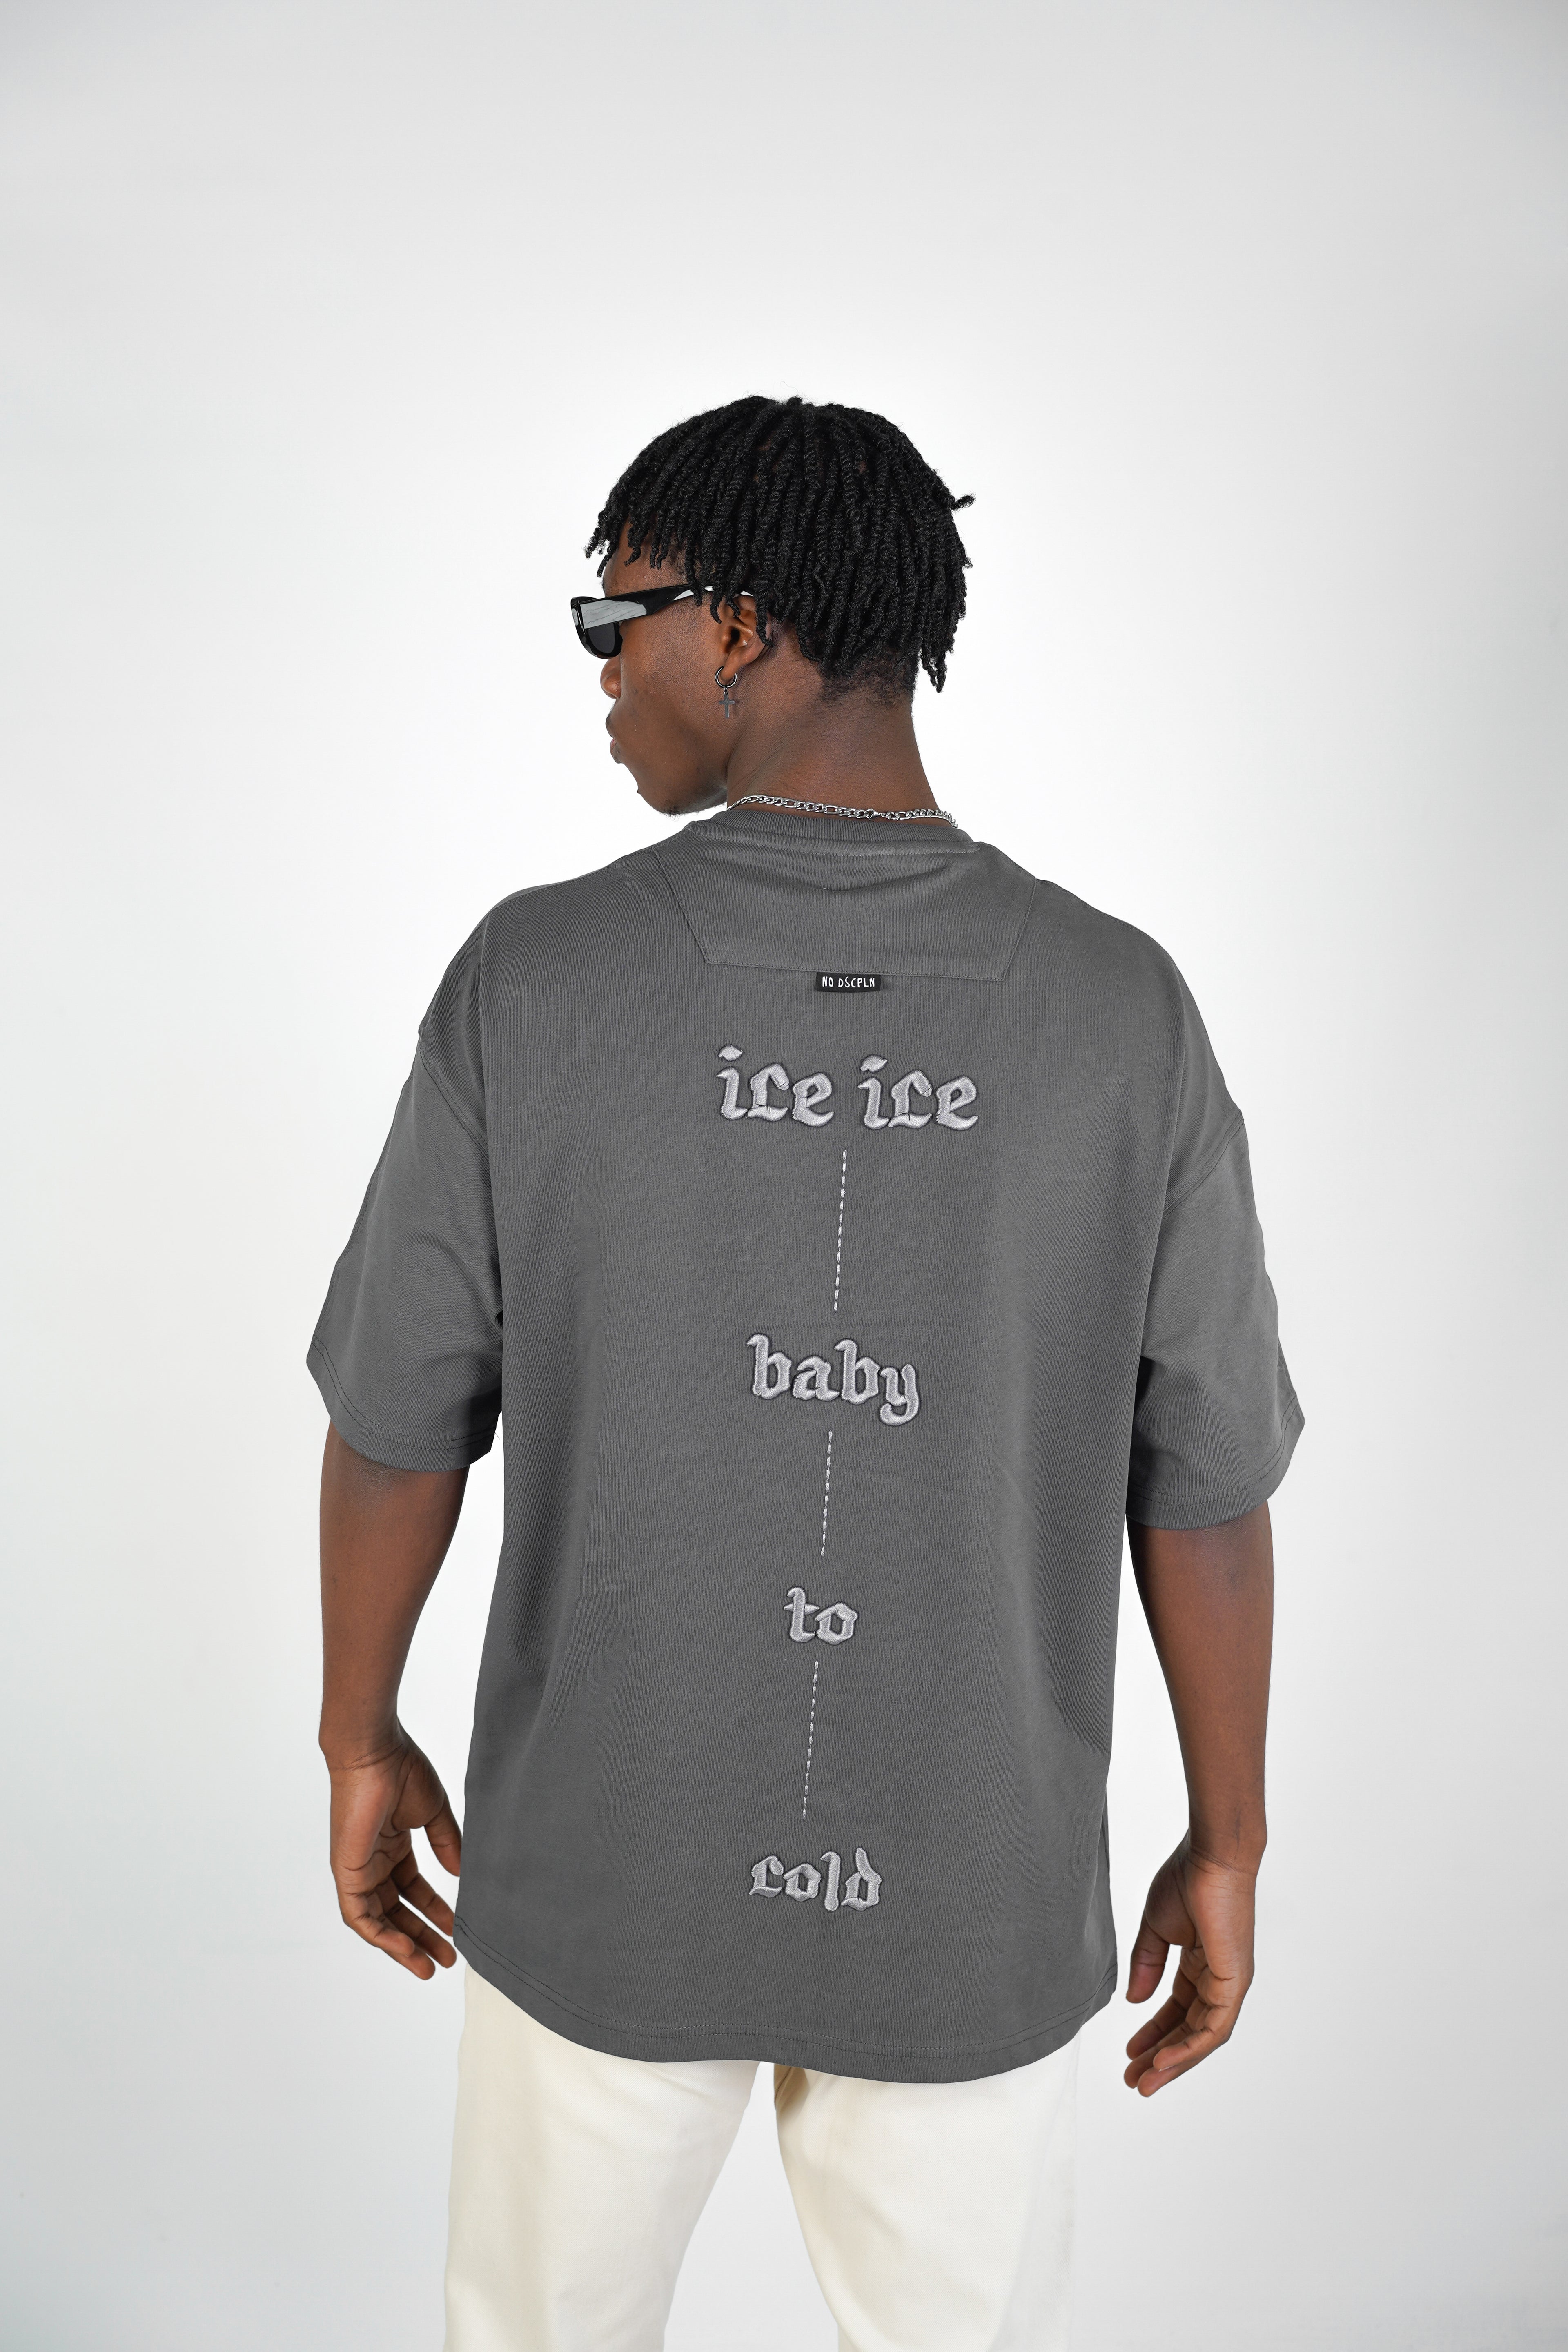 T-SHIRT - ICE ICE BABY - SMOKED